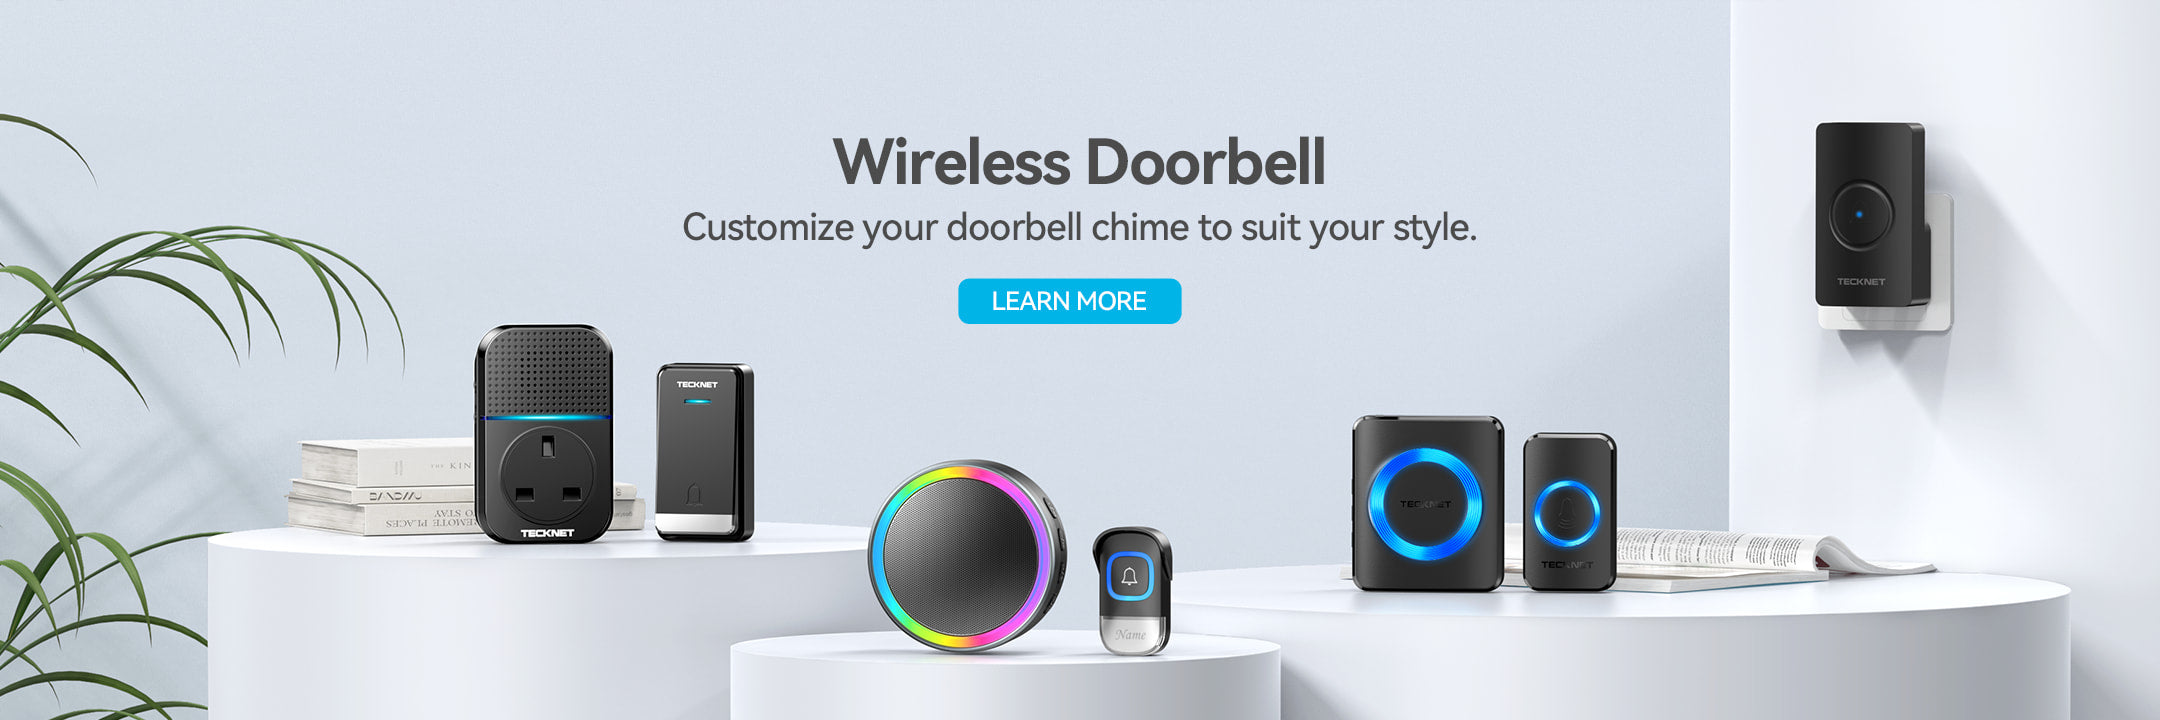 TECKNET-Wireless-Doorbell